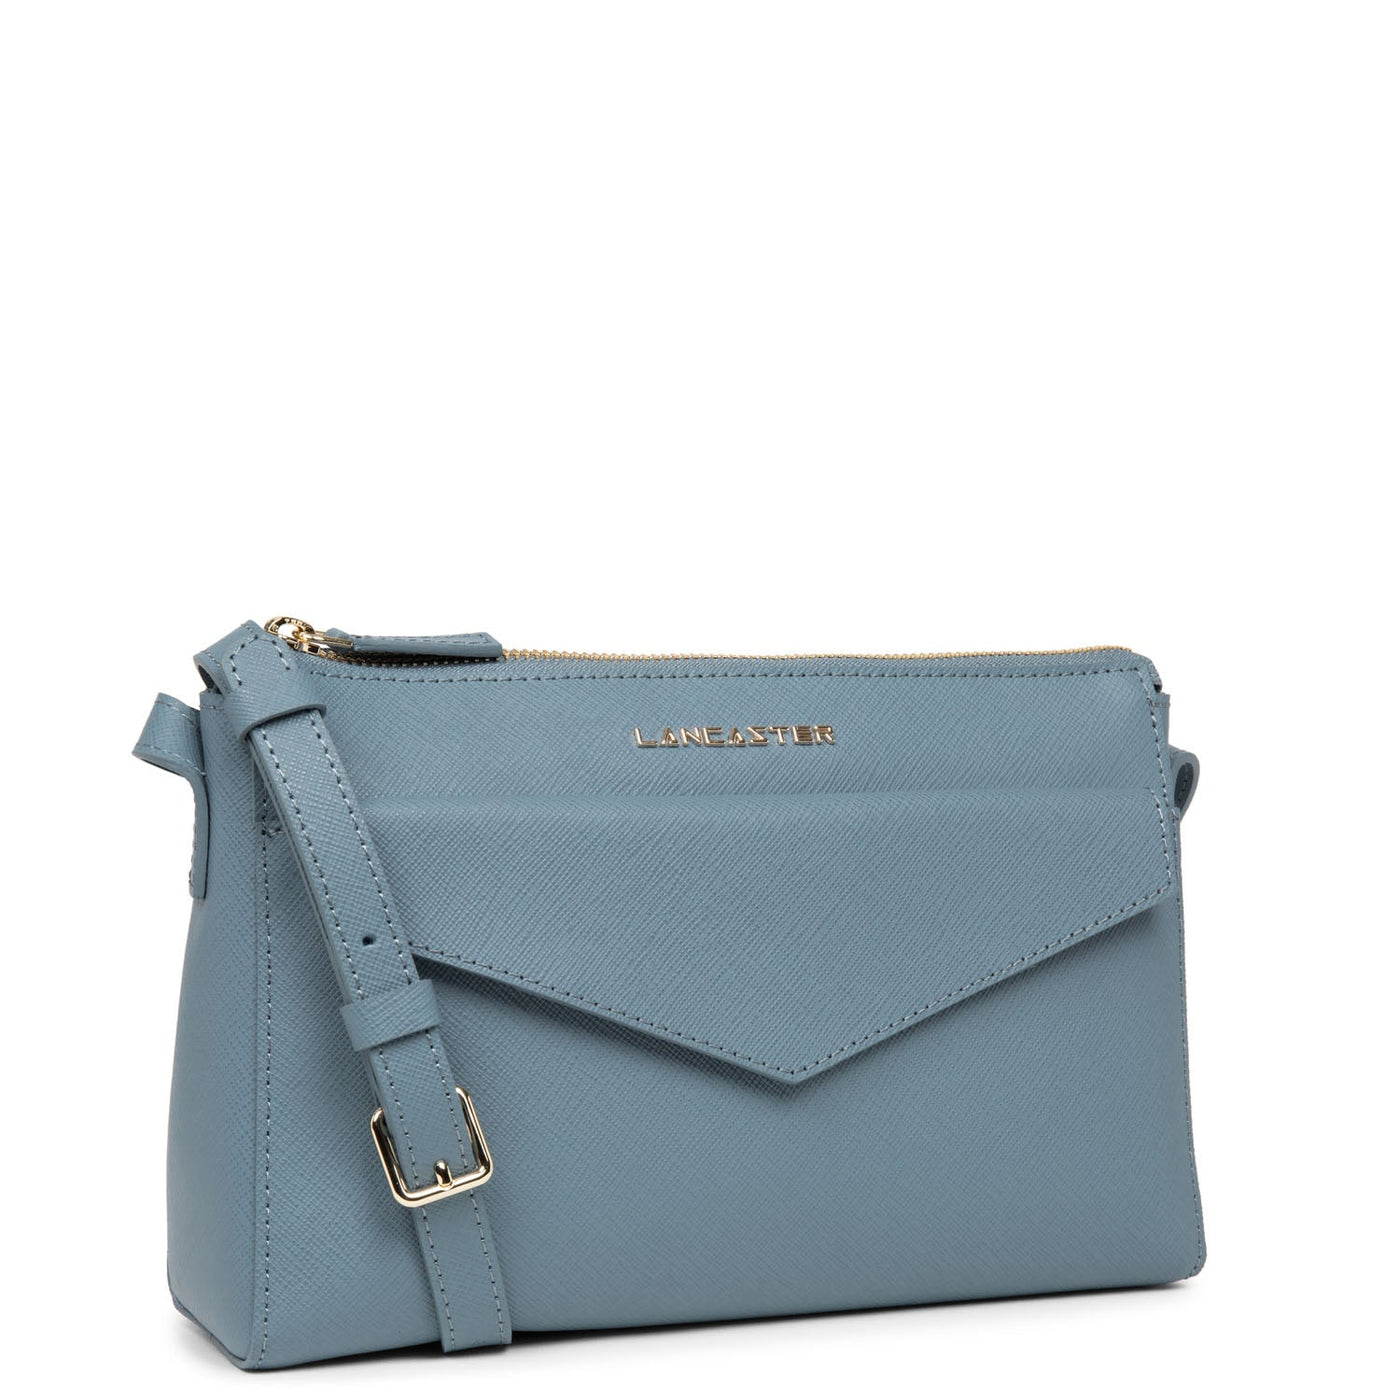 crossbody bag - saffiano signature #couleur_bleu-ardoise